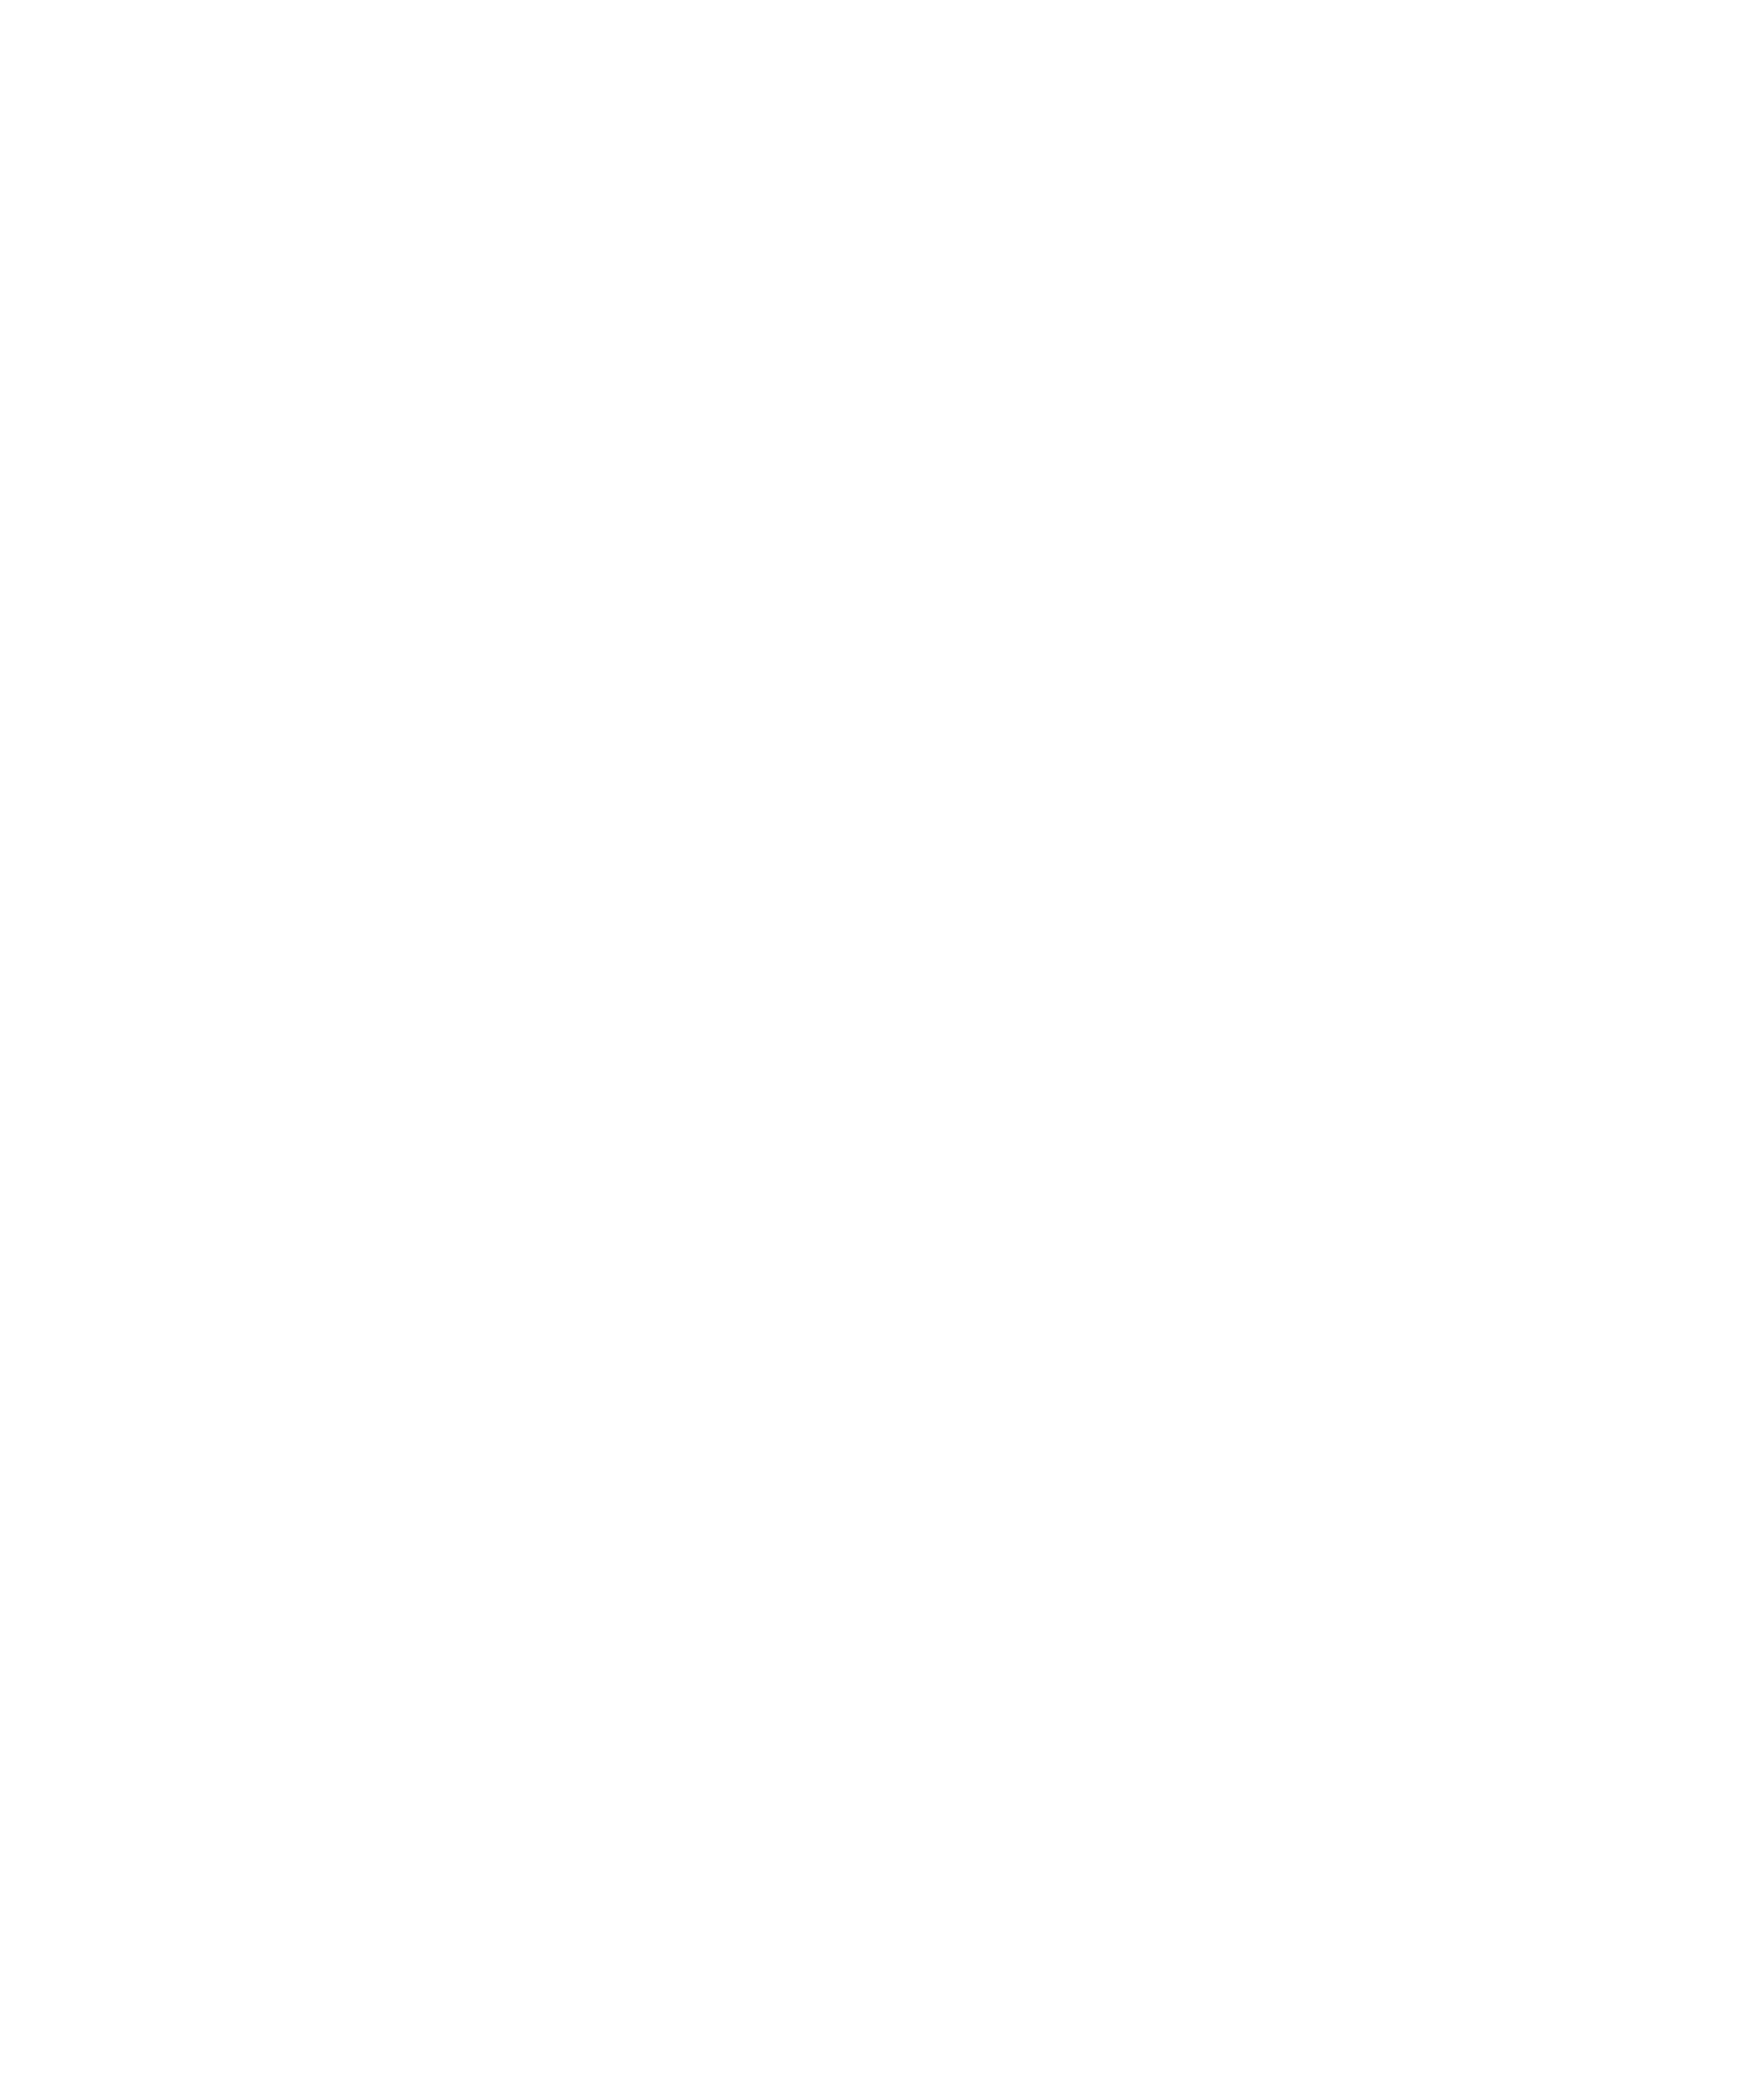 Trip Advisor Traveler's Choice Logo